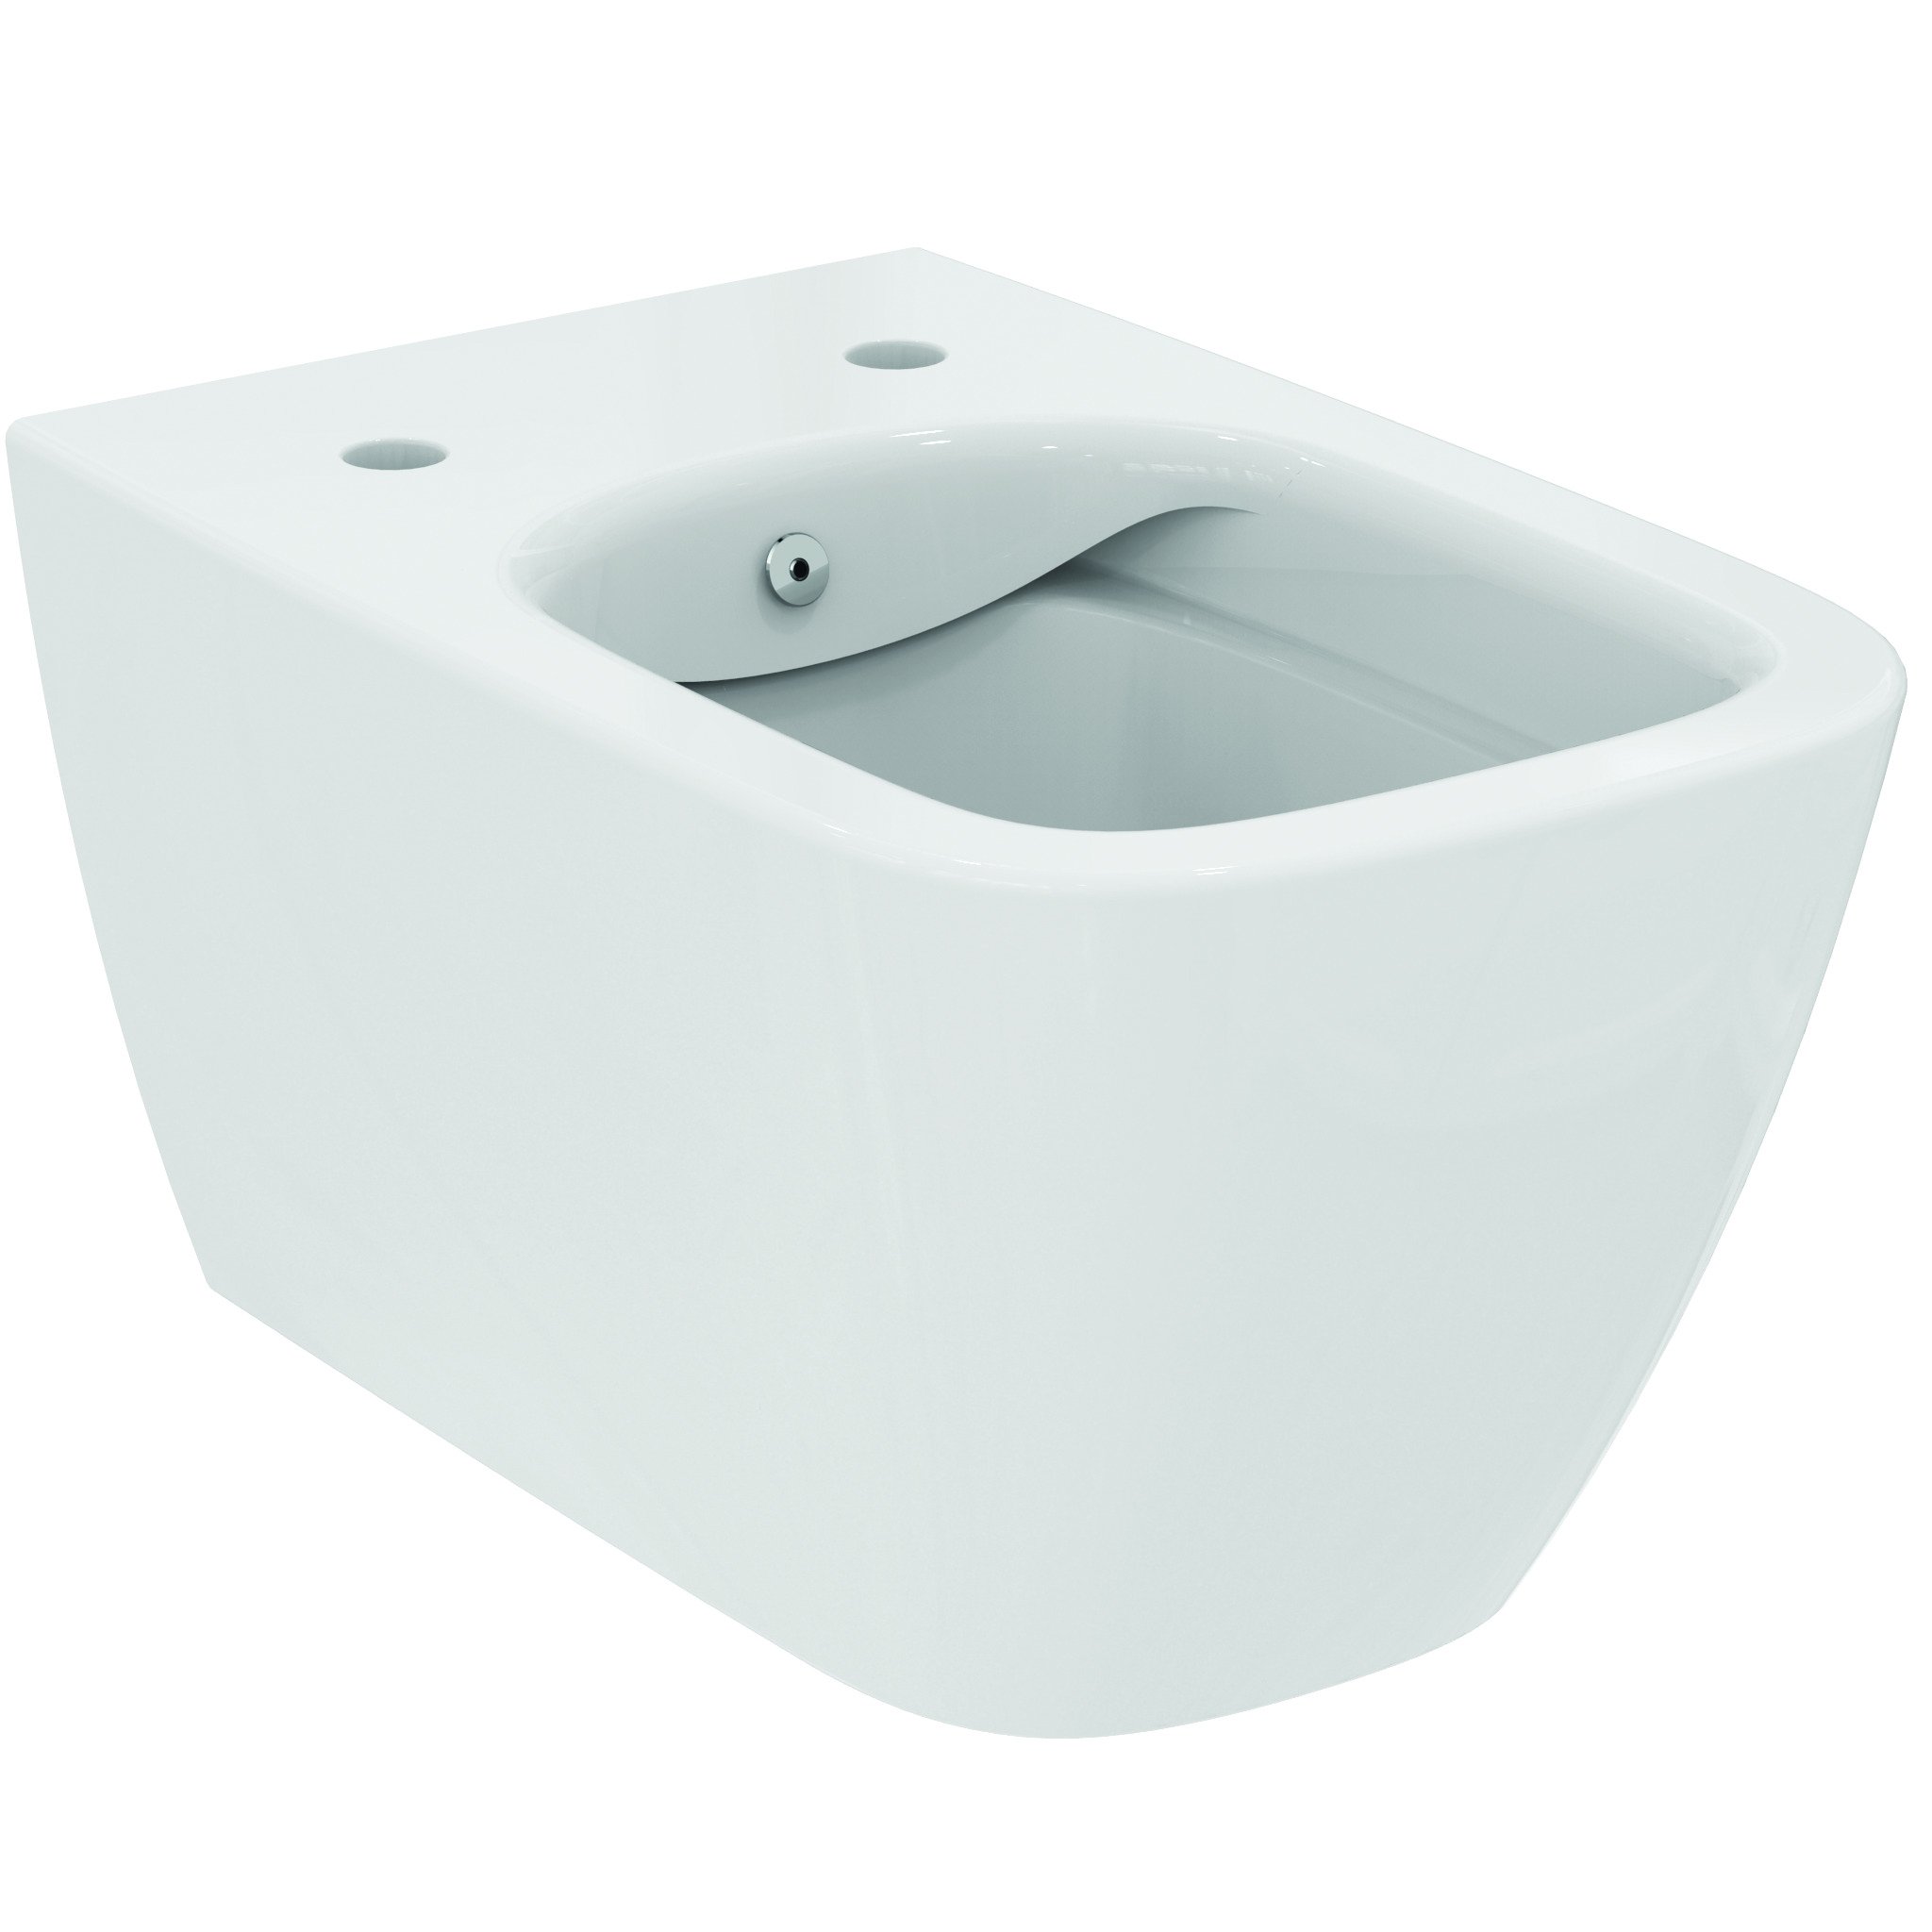 Vase wc - Vas wc suspendat Ideal Standard i.Life B Rimless+, 54x35.5 cm cu functie bideu si fixare ascunsa, alb, laguna.ro